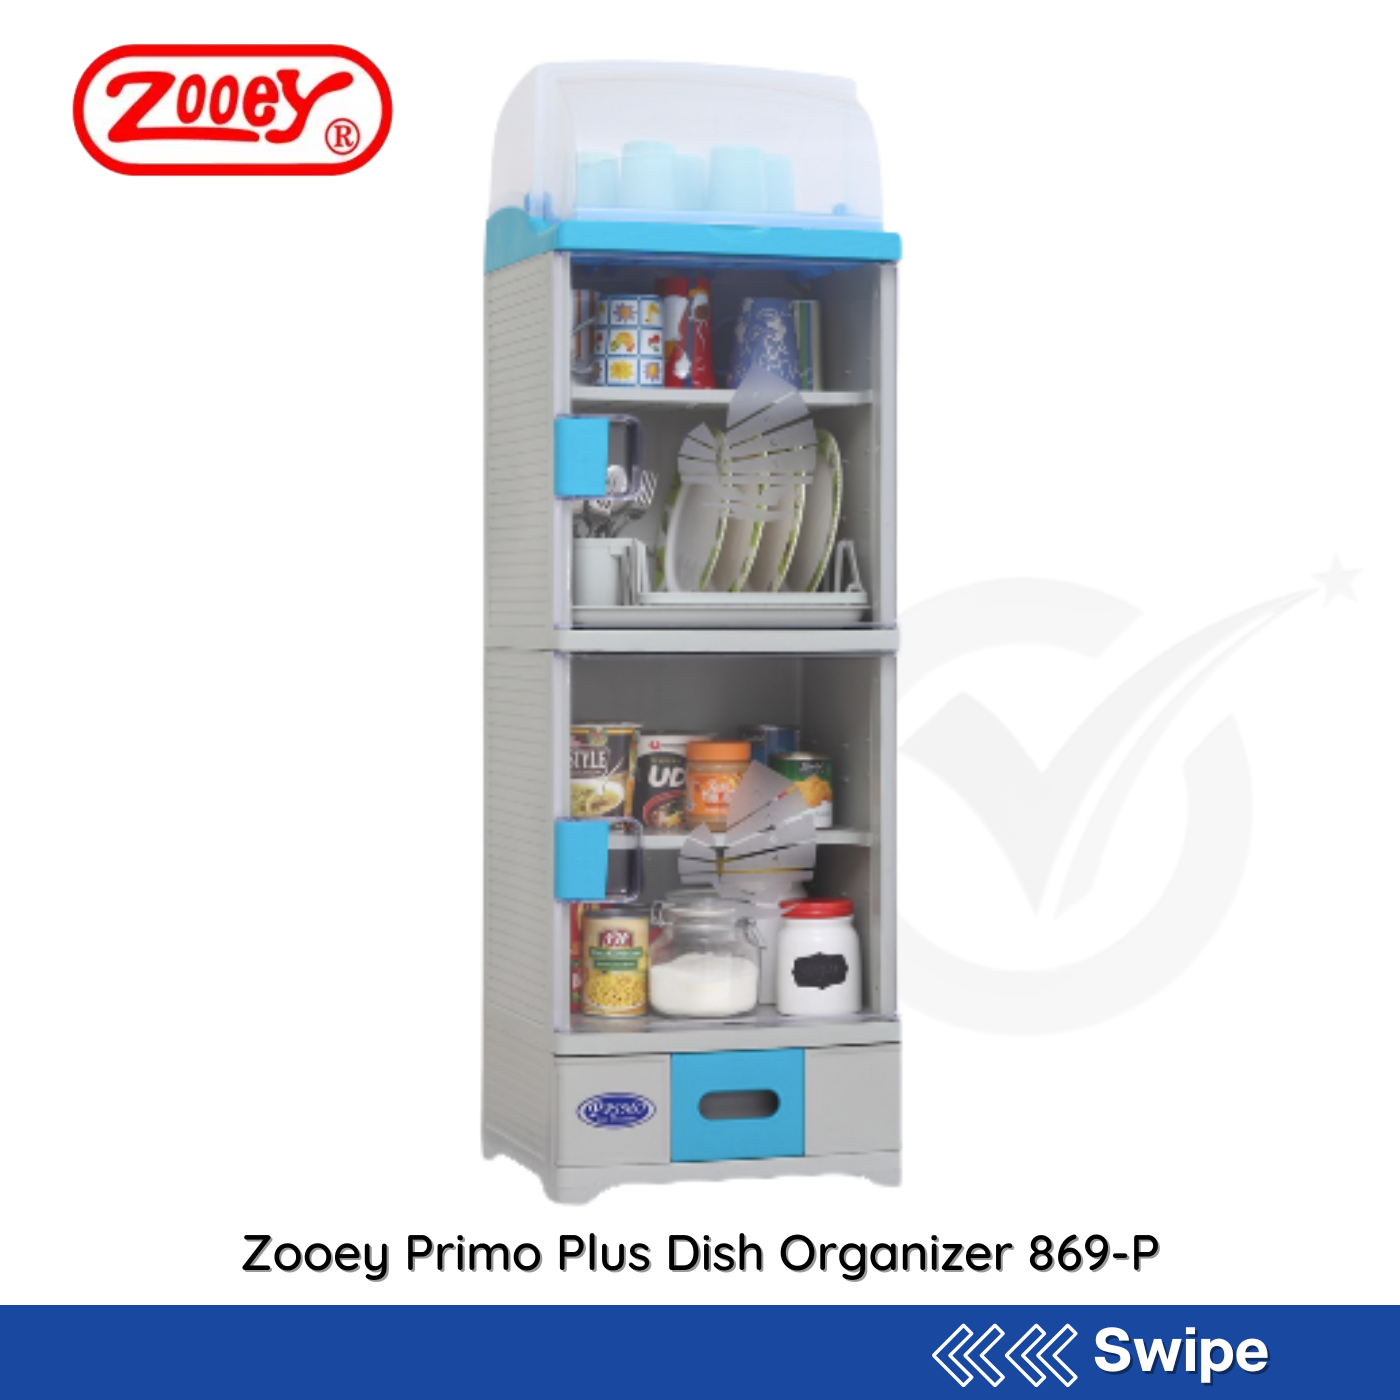 Zooey Primo Plus Dish Organizer 869-P - People's Choice Marketing